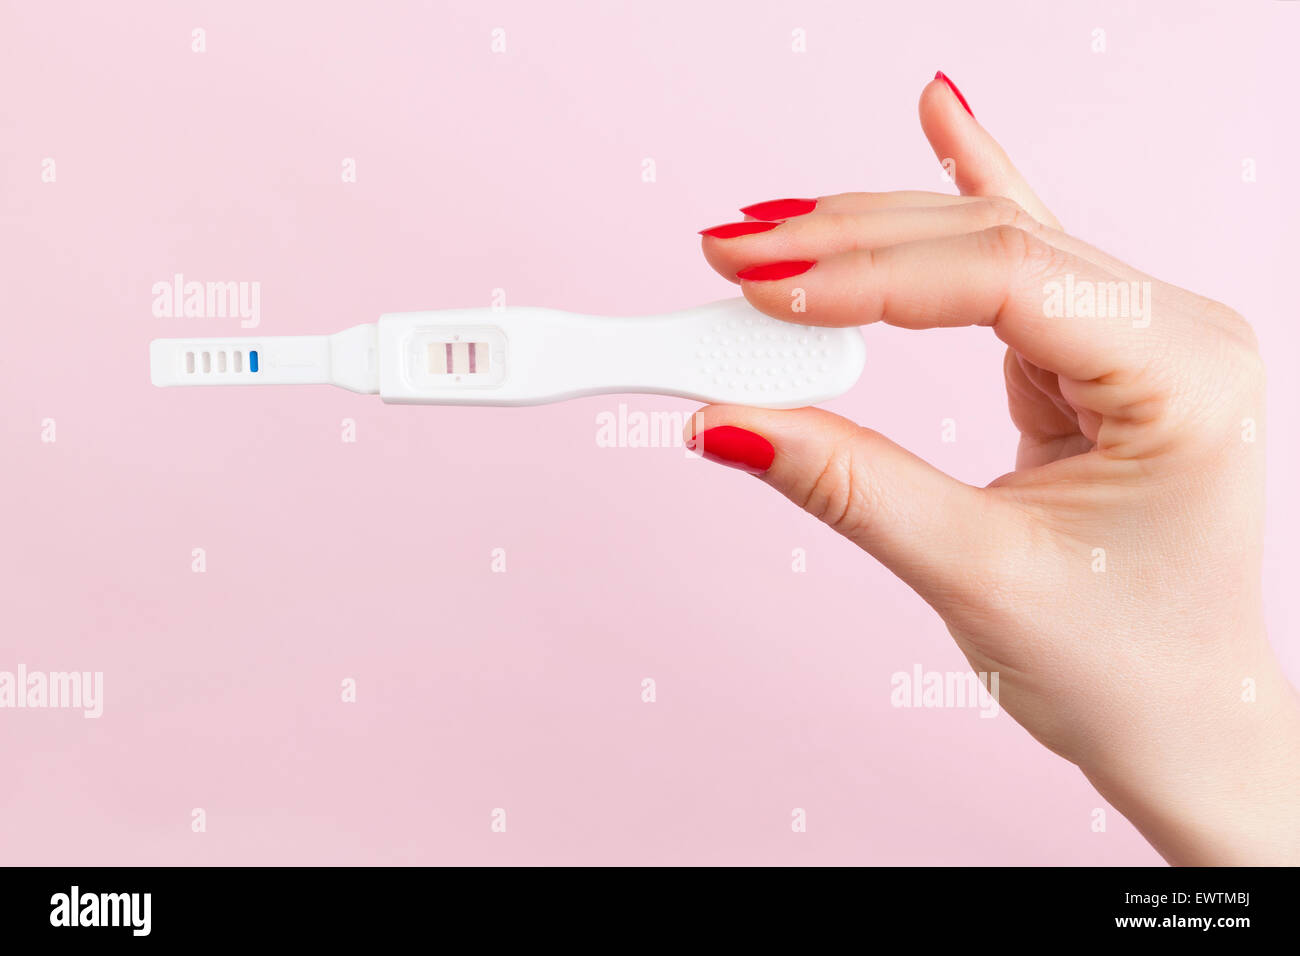 Bella mano femminile con le unghie rosse azienda positivi ai test di gravidanza isolato su sfondo rosa. La maternità, la gravidanza Foto Stock